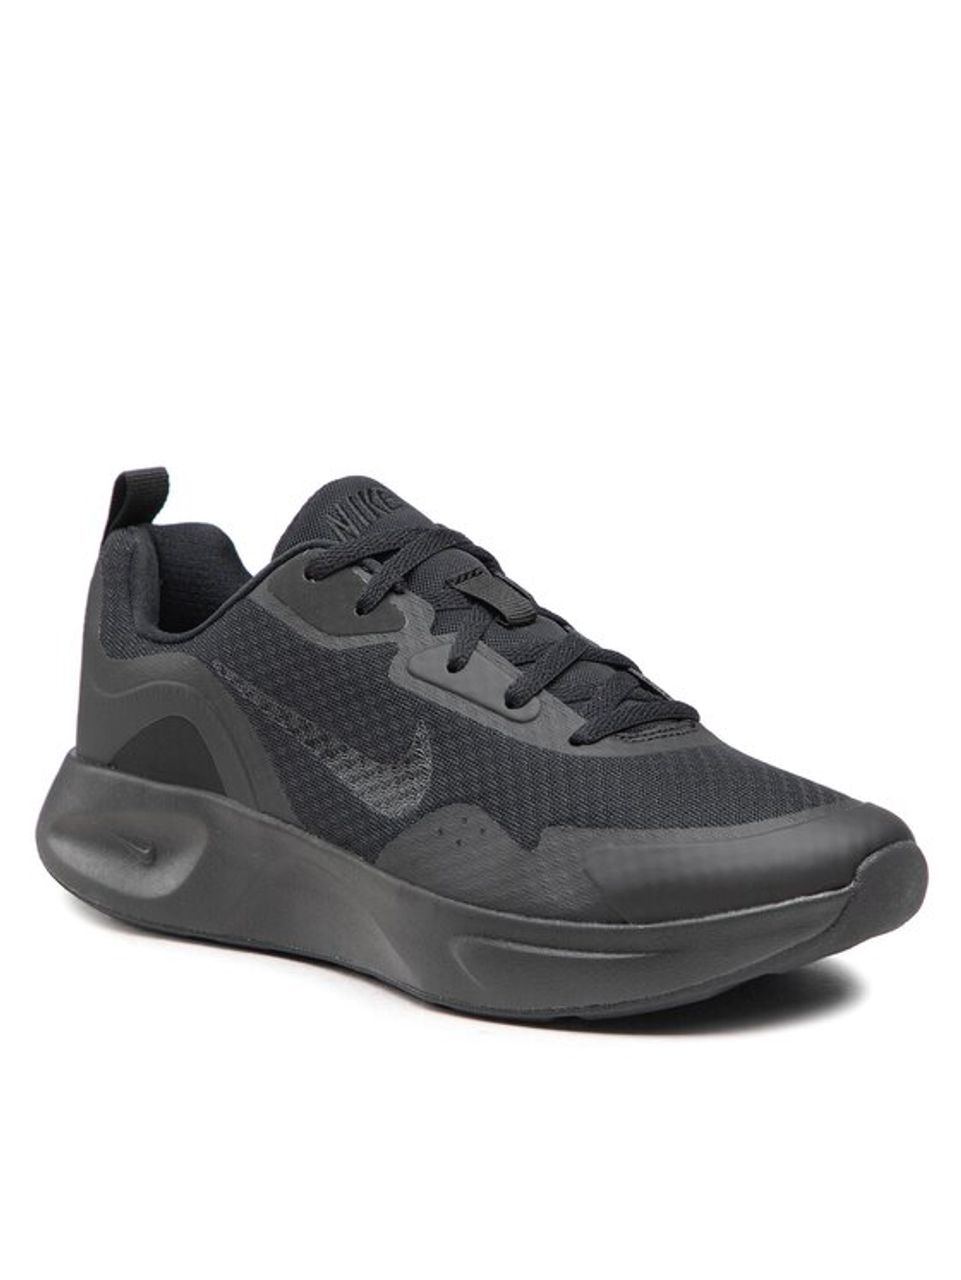 Nike Schuhe Wearallday CJ1682 003 Schwarz